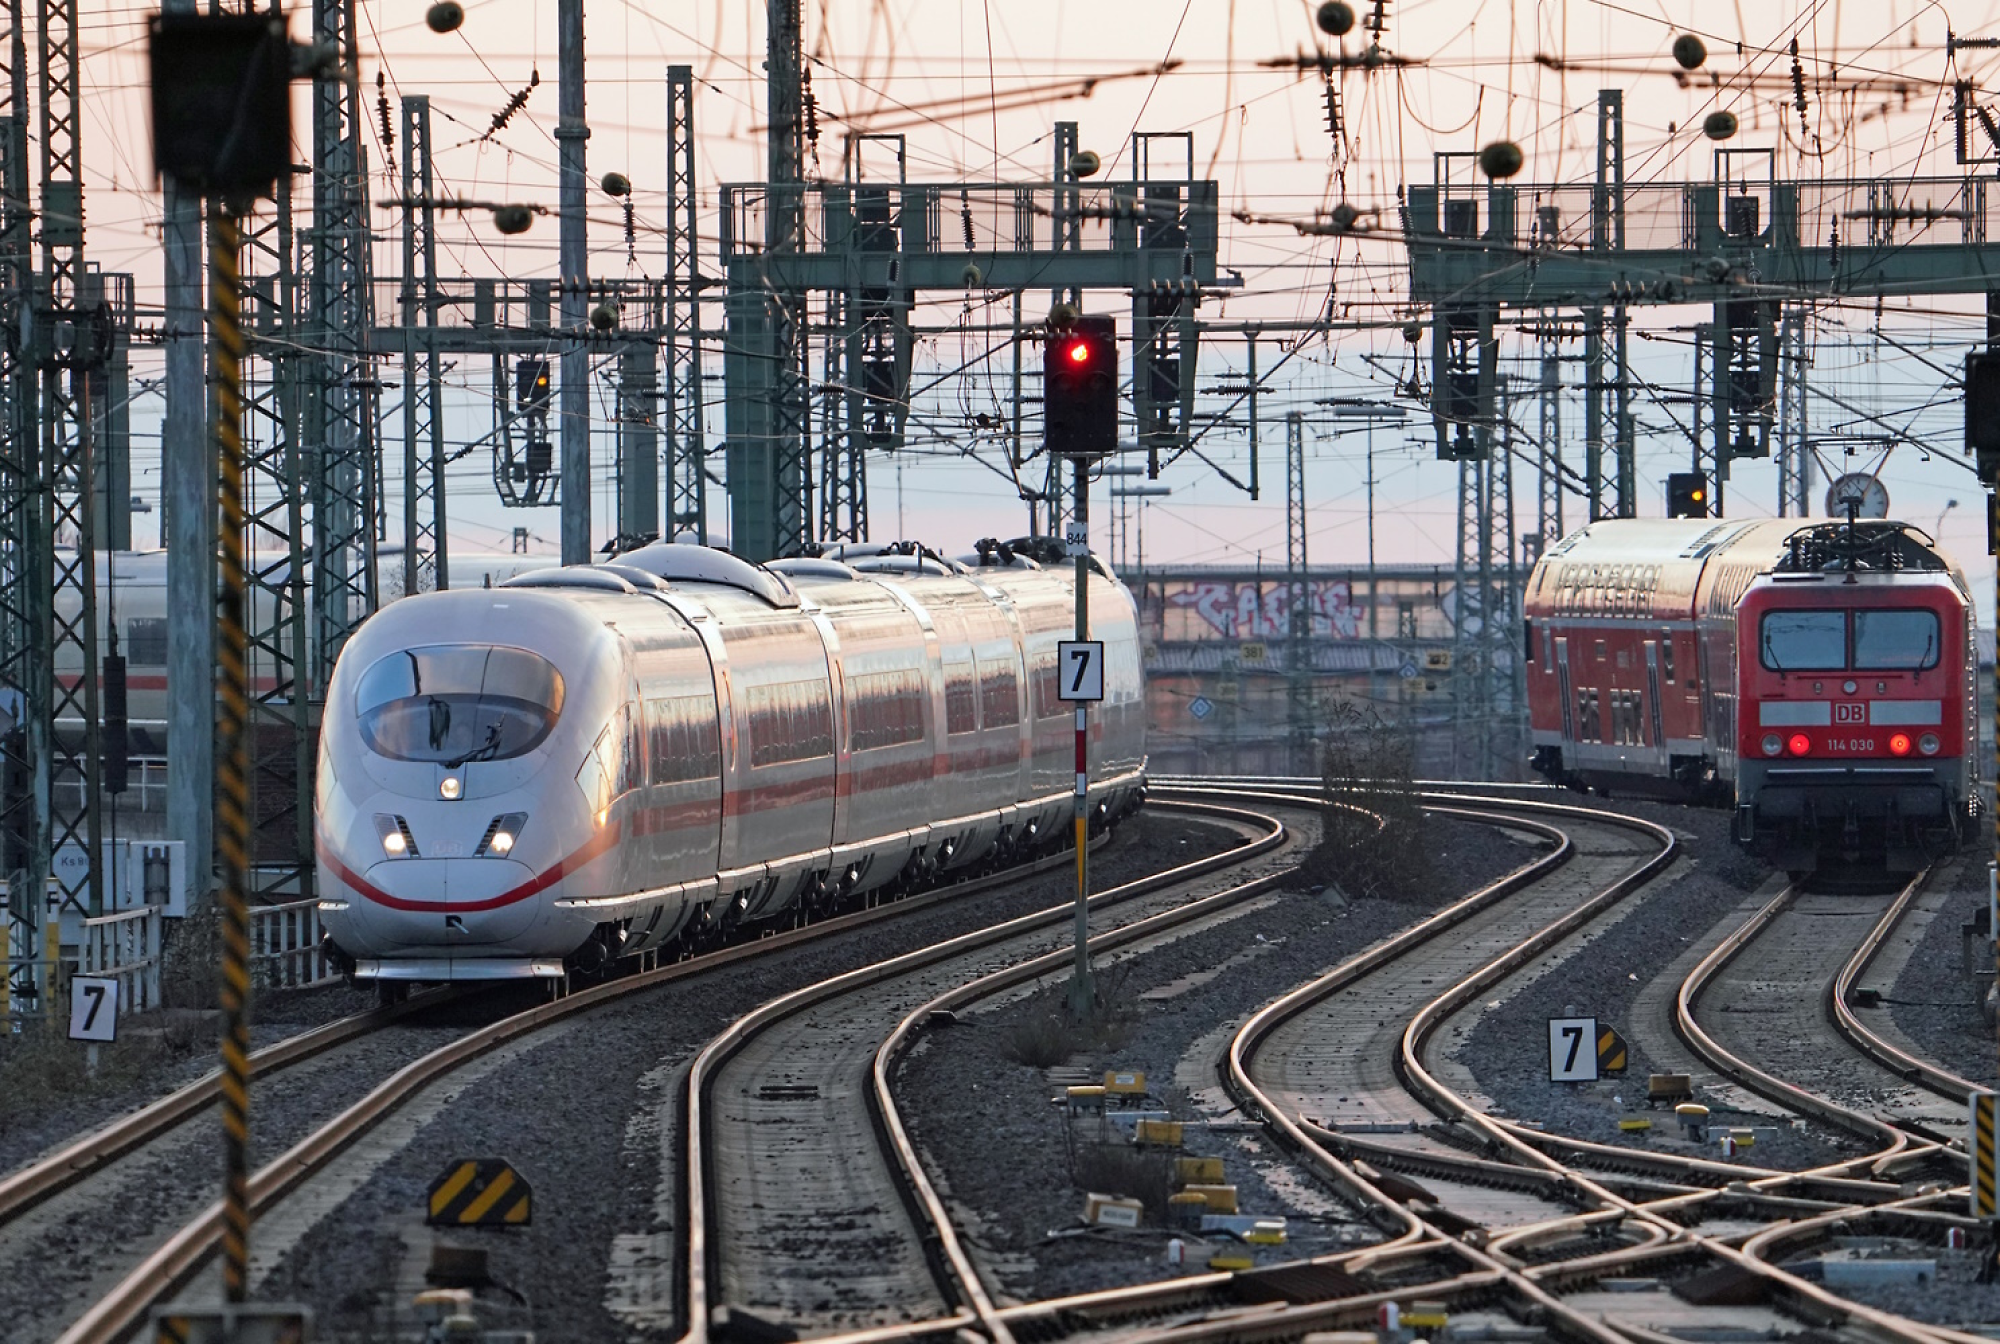 Un moderno tren de alta velocidad que llega a una estación con varias pistas de tren y cables sobrecargados al atardecer.